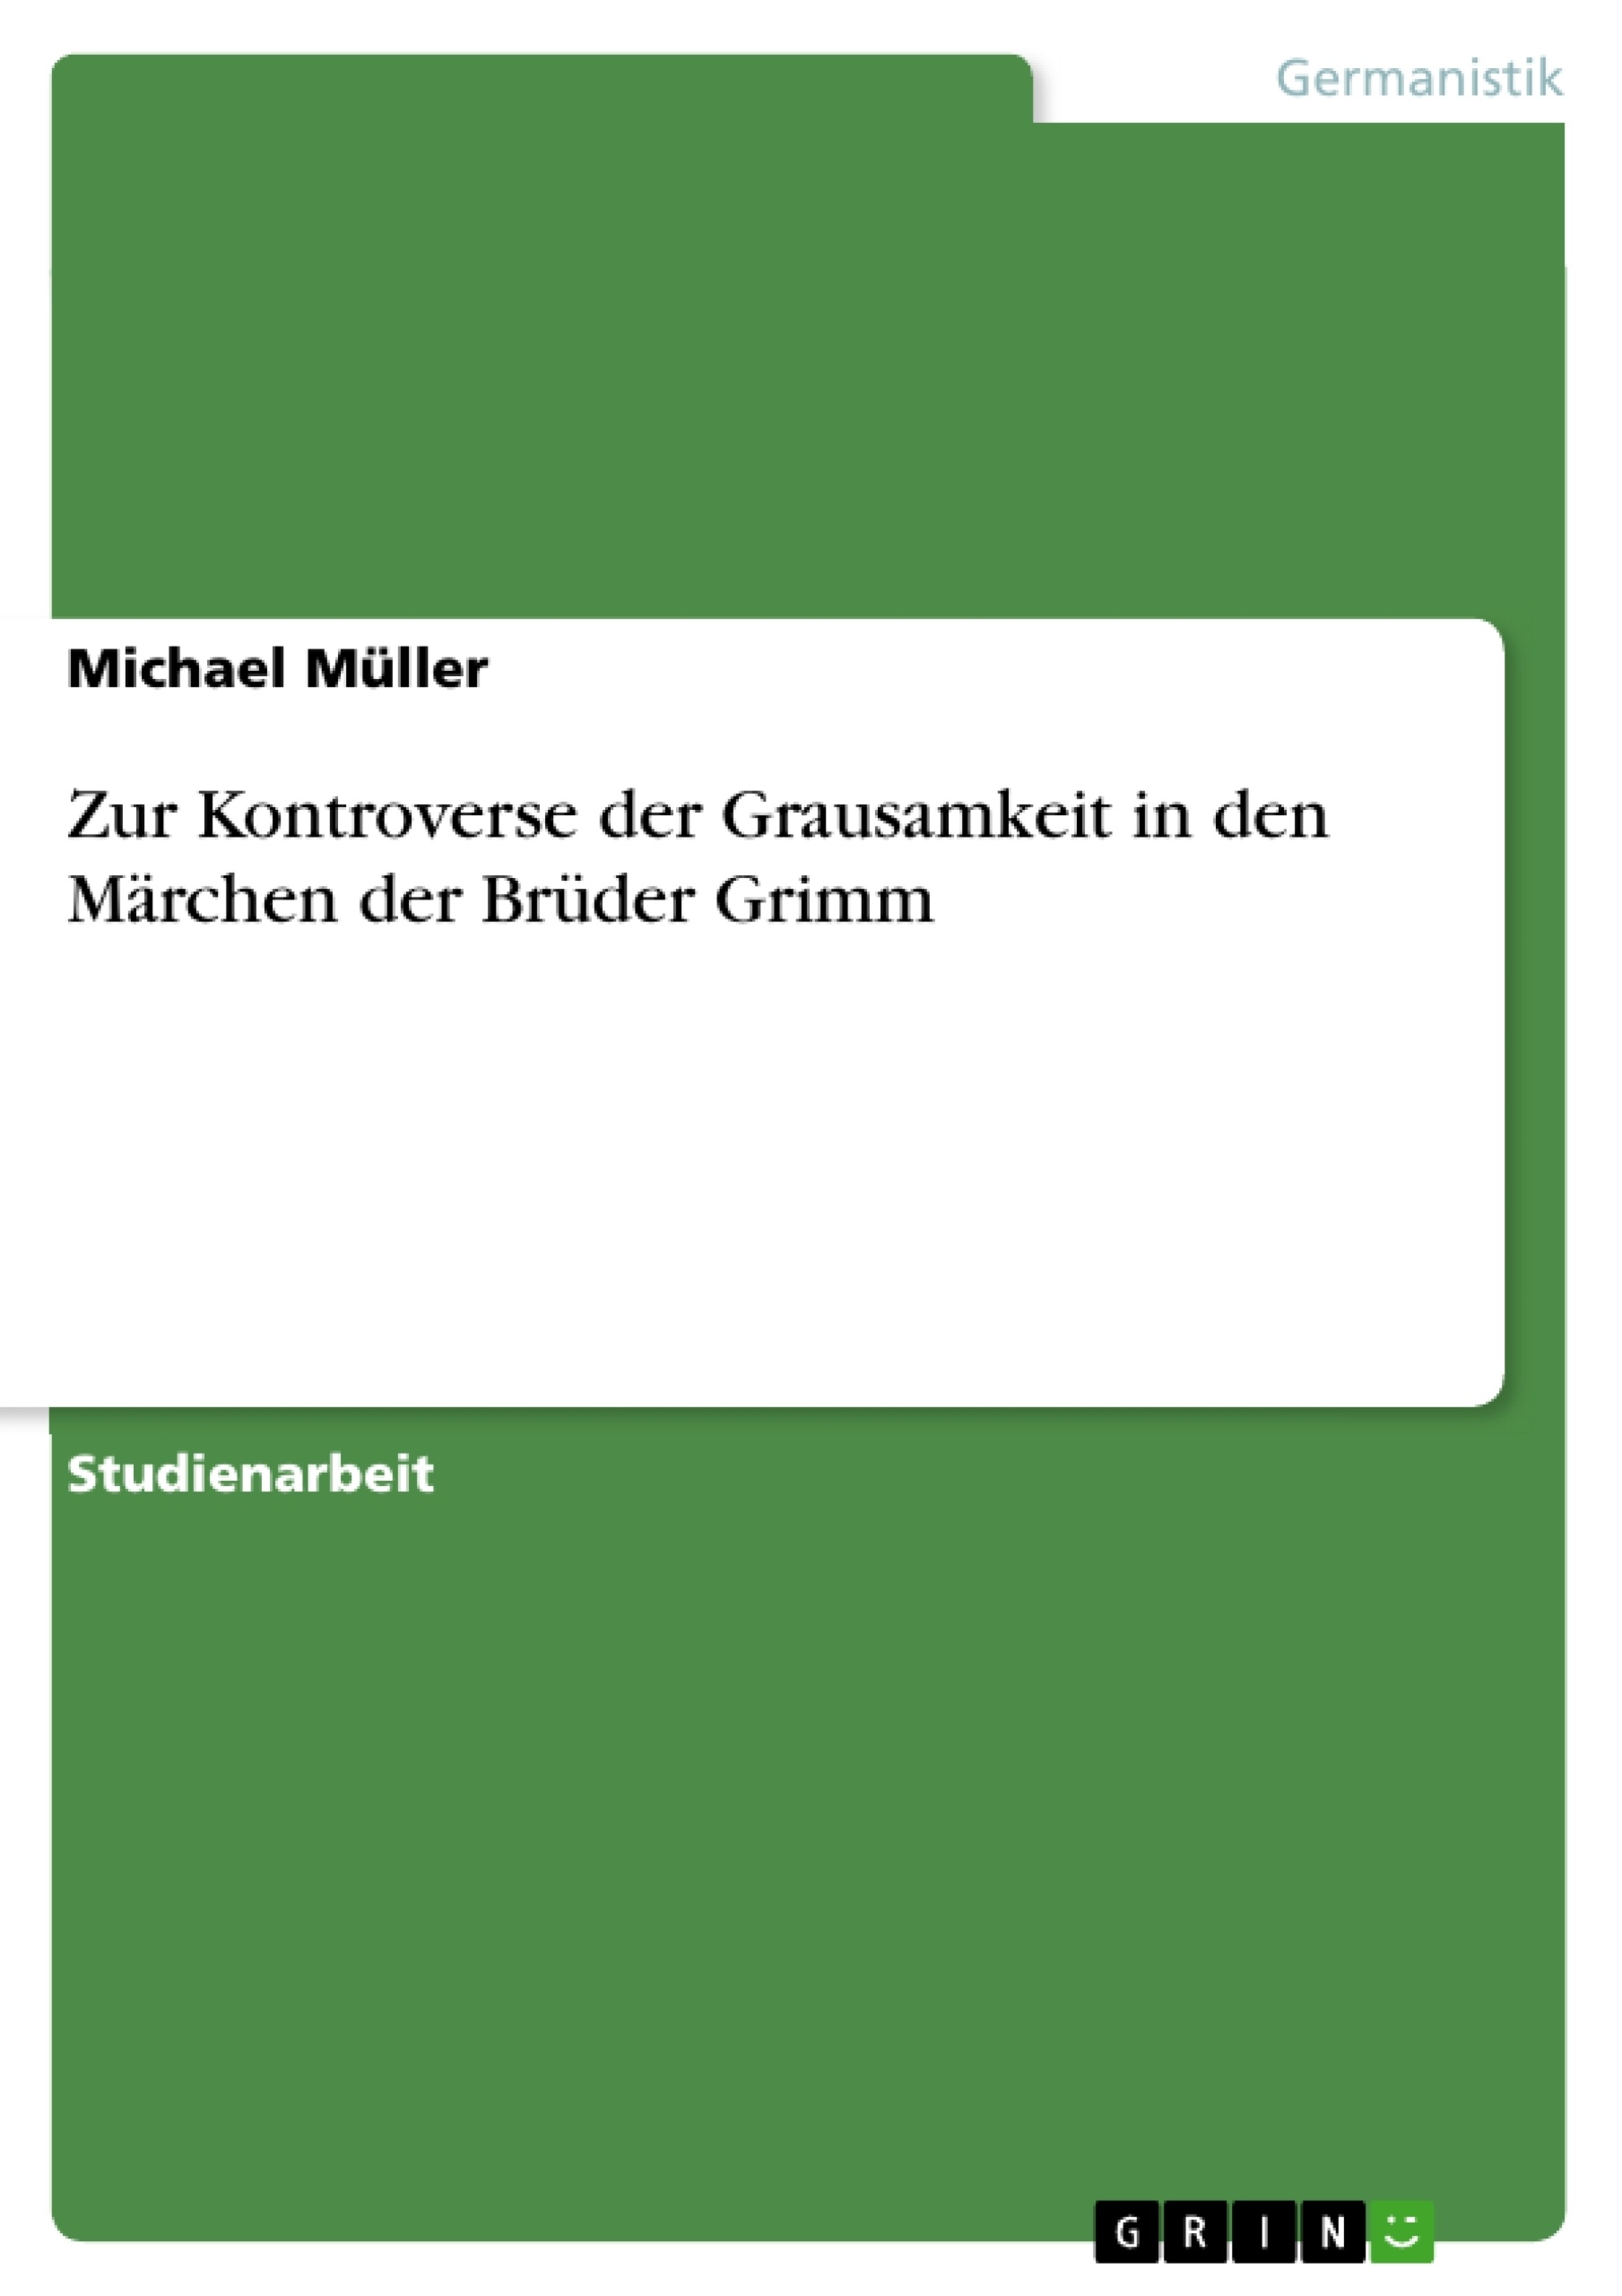 Título: Zur Kontroverse der Grausamkeit in den Märchen der Brüder Grimm